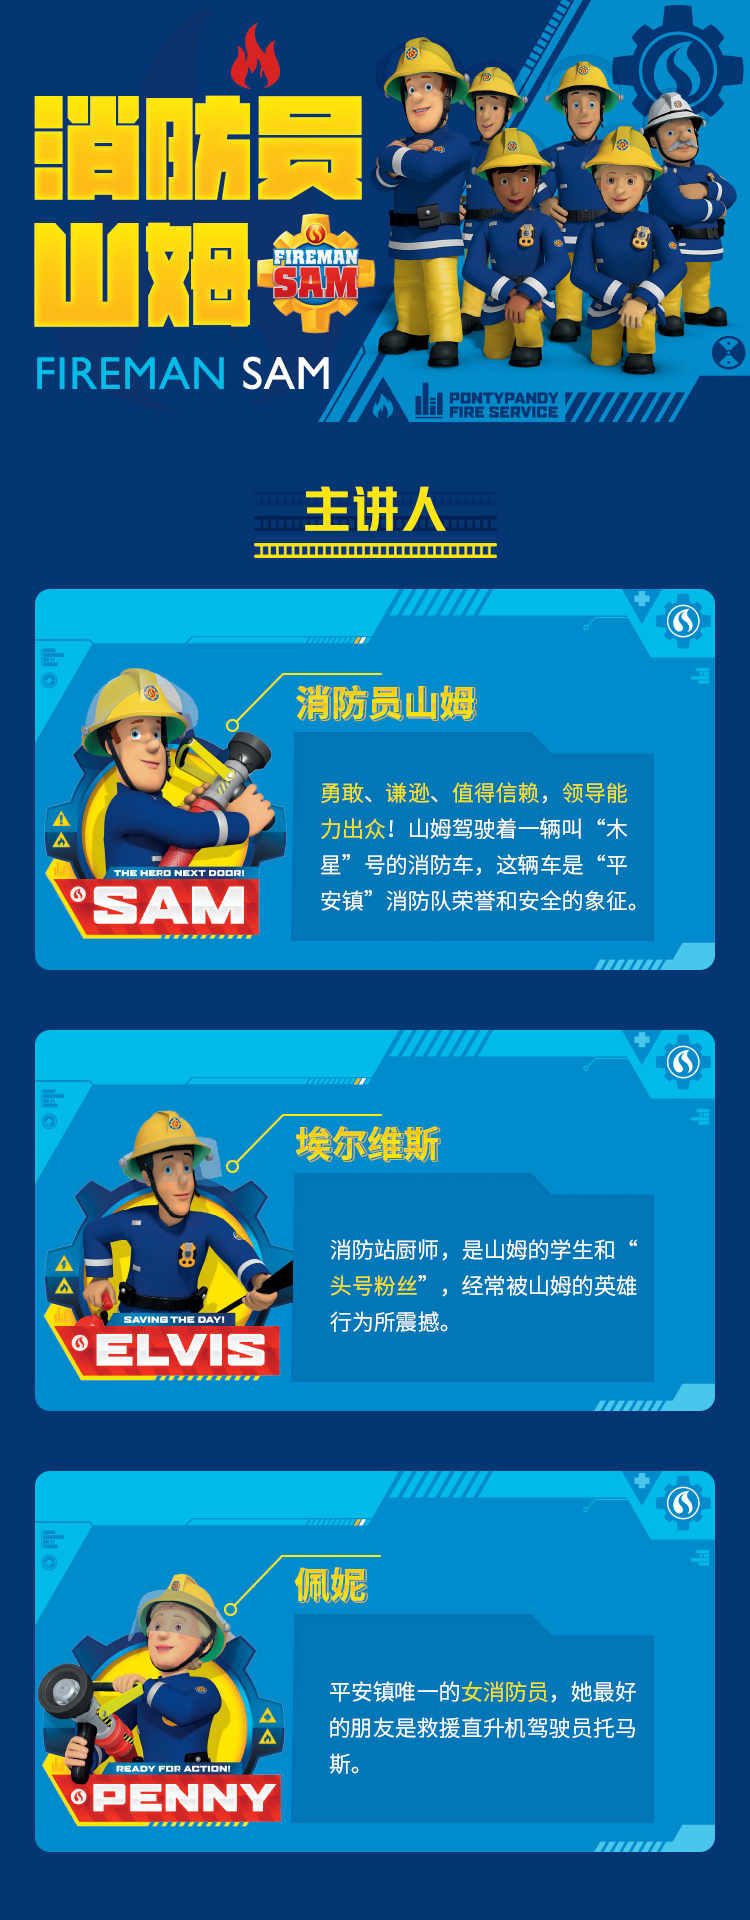 山姆消防队员_山姆消防培训学校怎么样_信息时报 消防员山姆